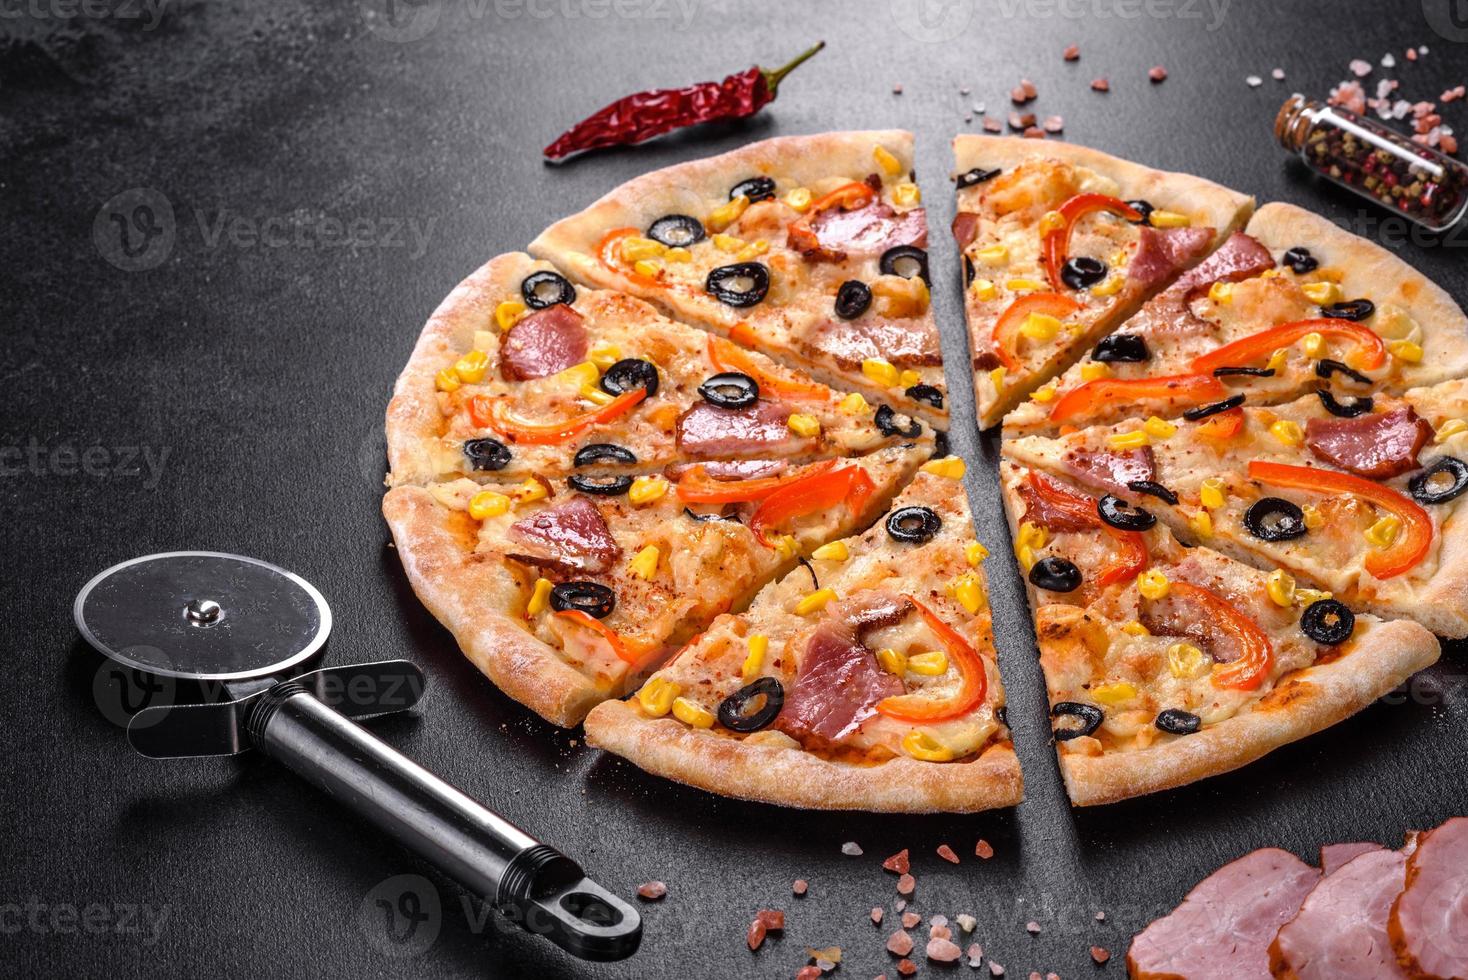 pizza fresca e deliziosa fatta in un forno a focolare con olive, peperoncino e prosciutto foto